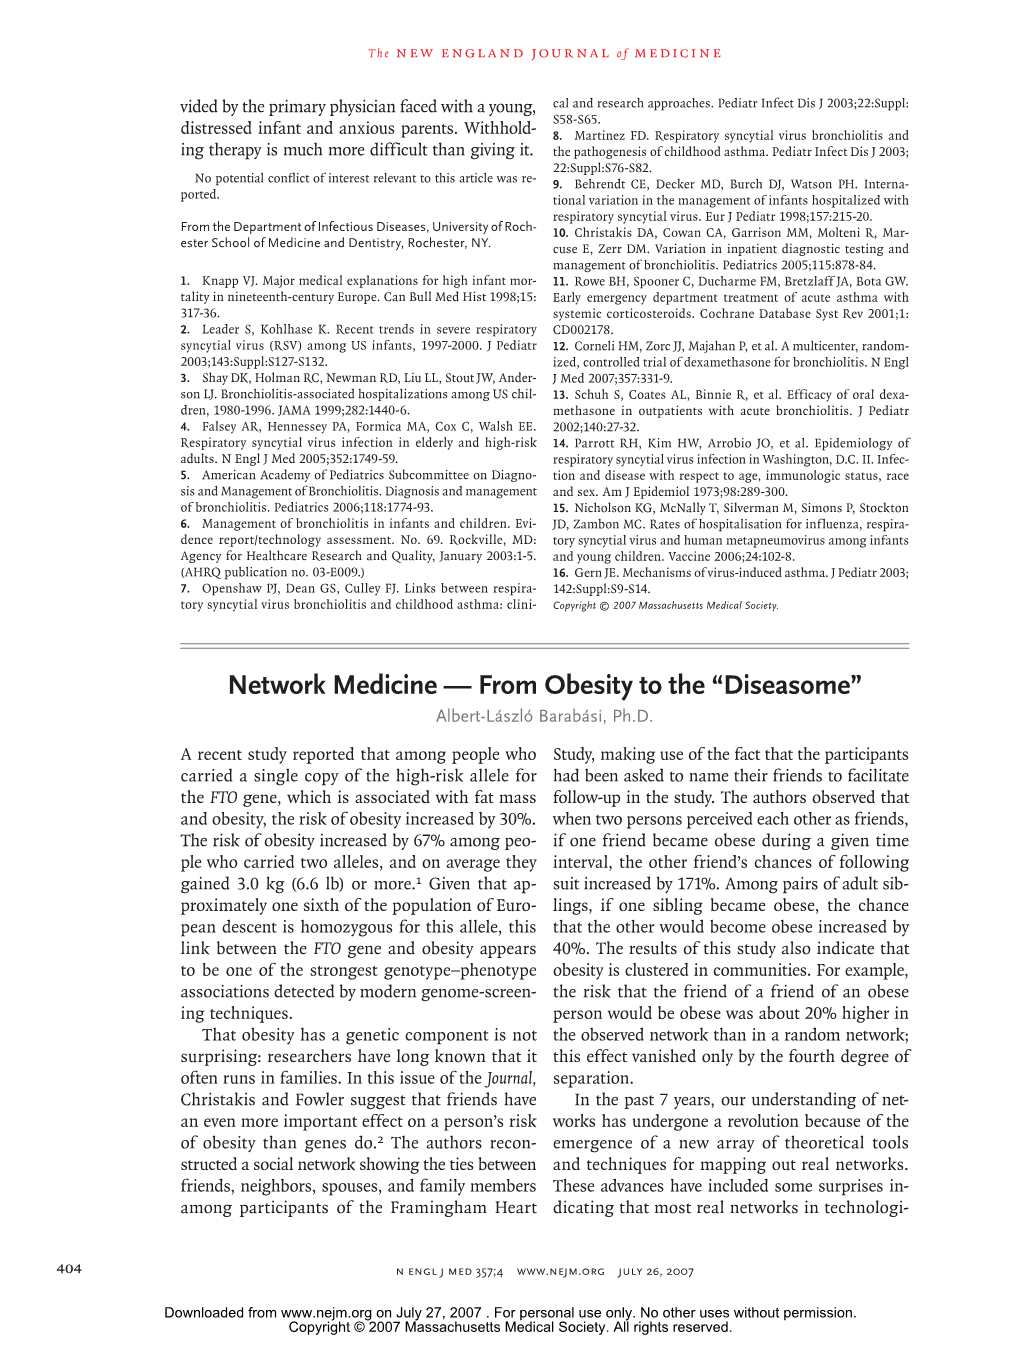 Network Medicine — from Obesity to the “Diseasome” Albert-László Barabási, Ph.D